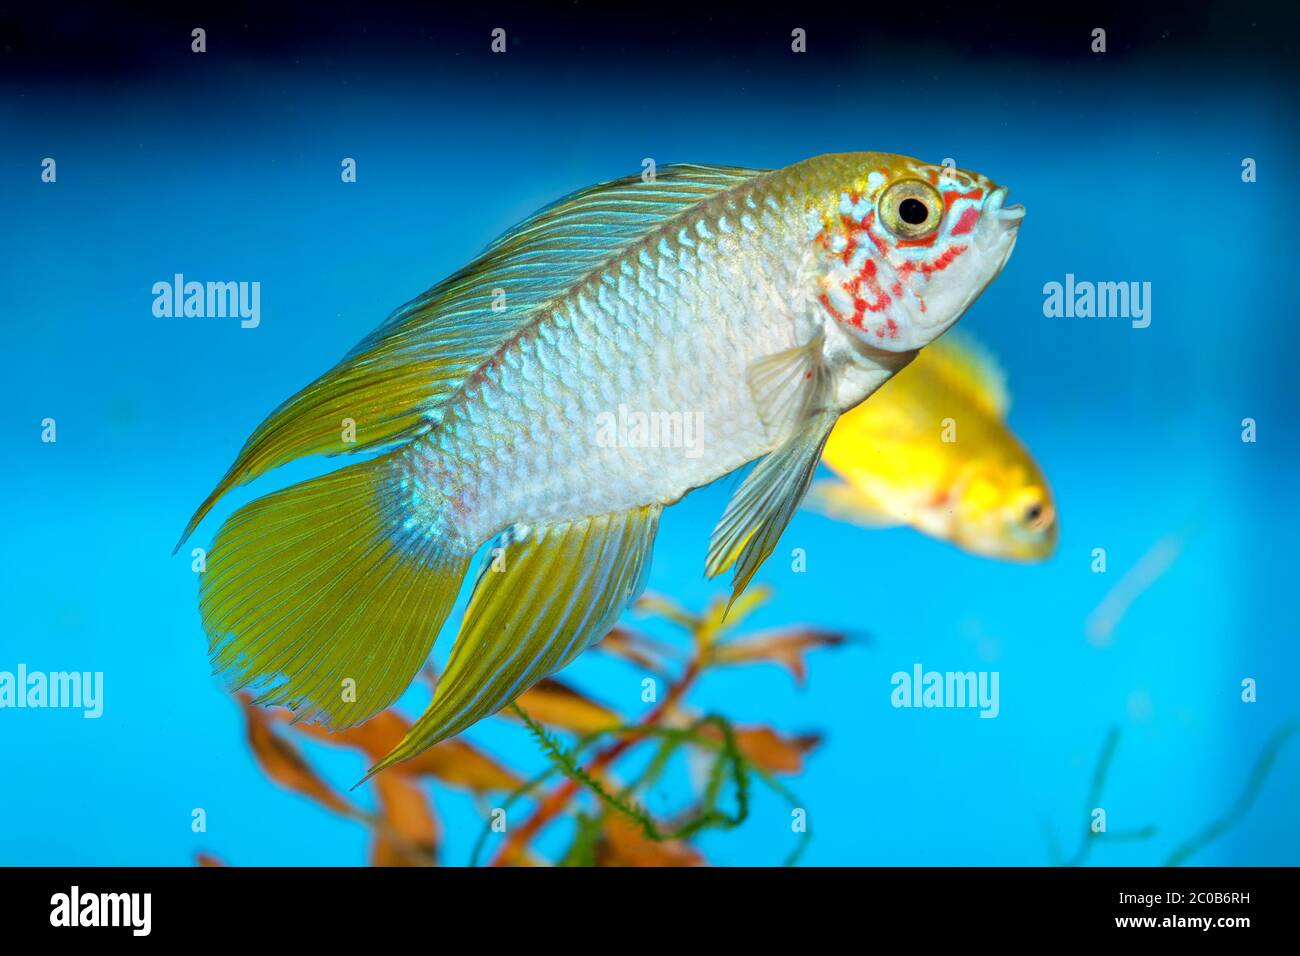 Apistogramma fish Stock Photo